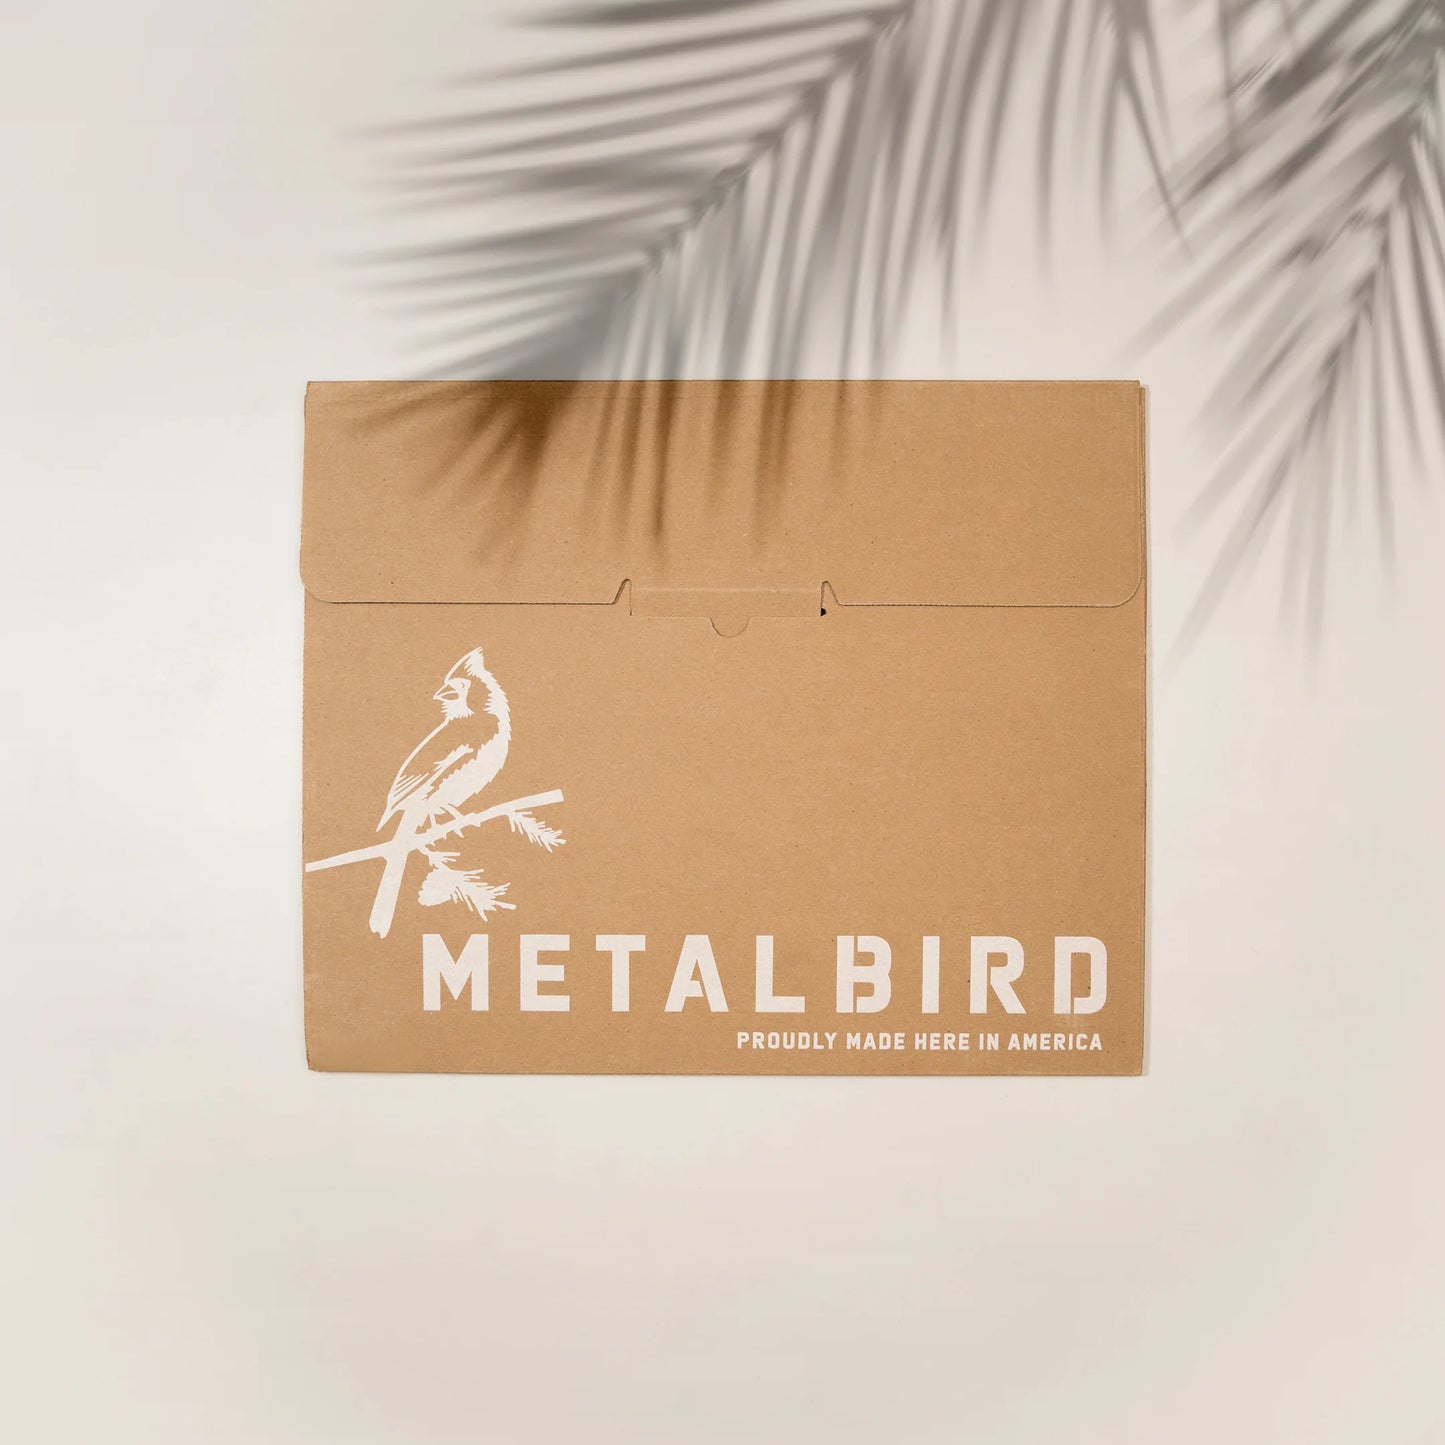 METALBIRD BALD EAGLE